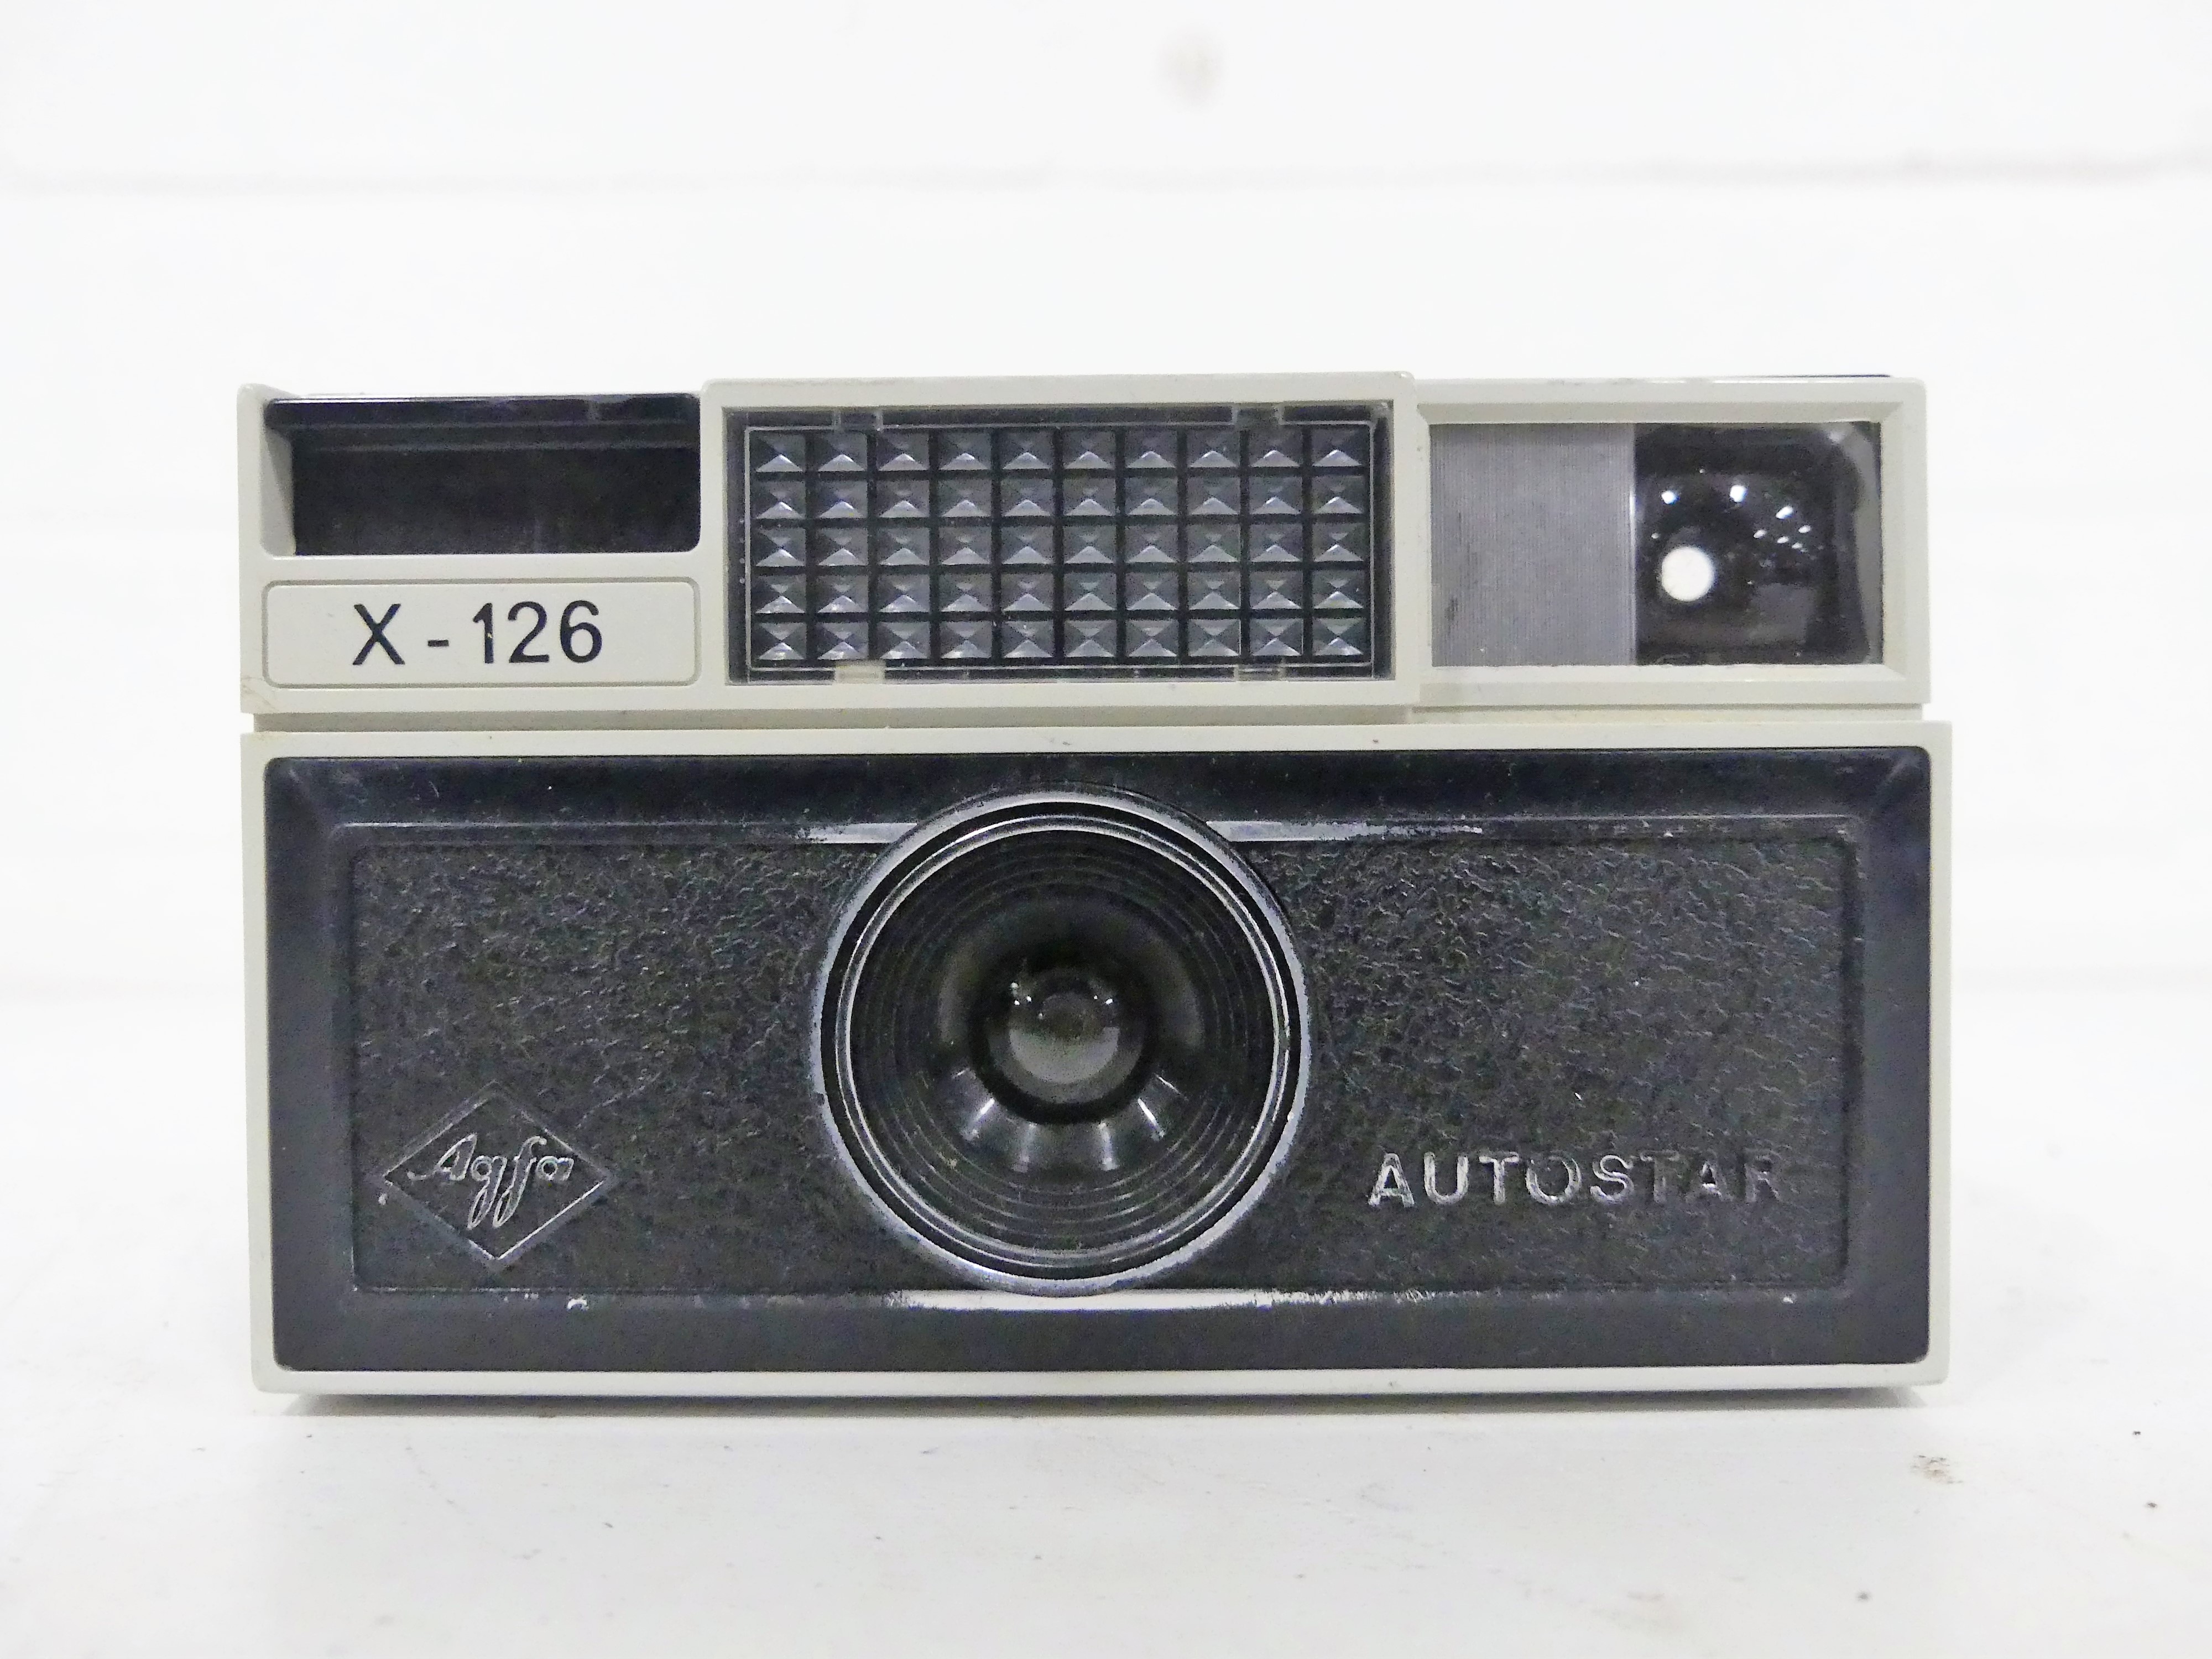 Agfa camera Autostar X-126, 1972